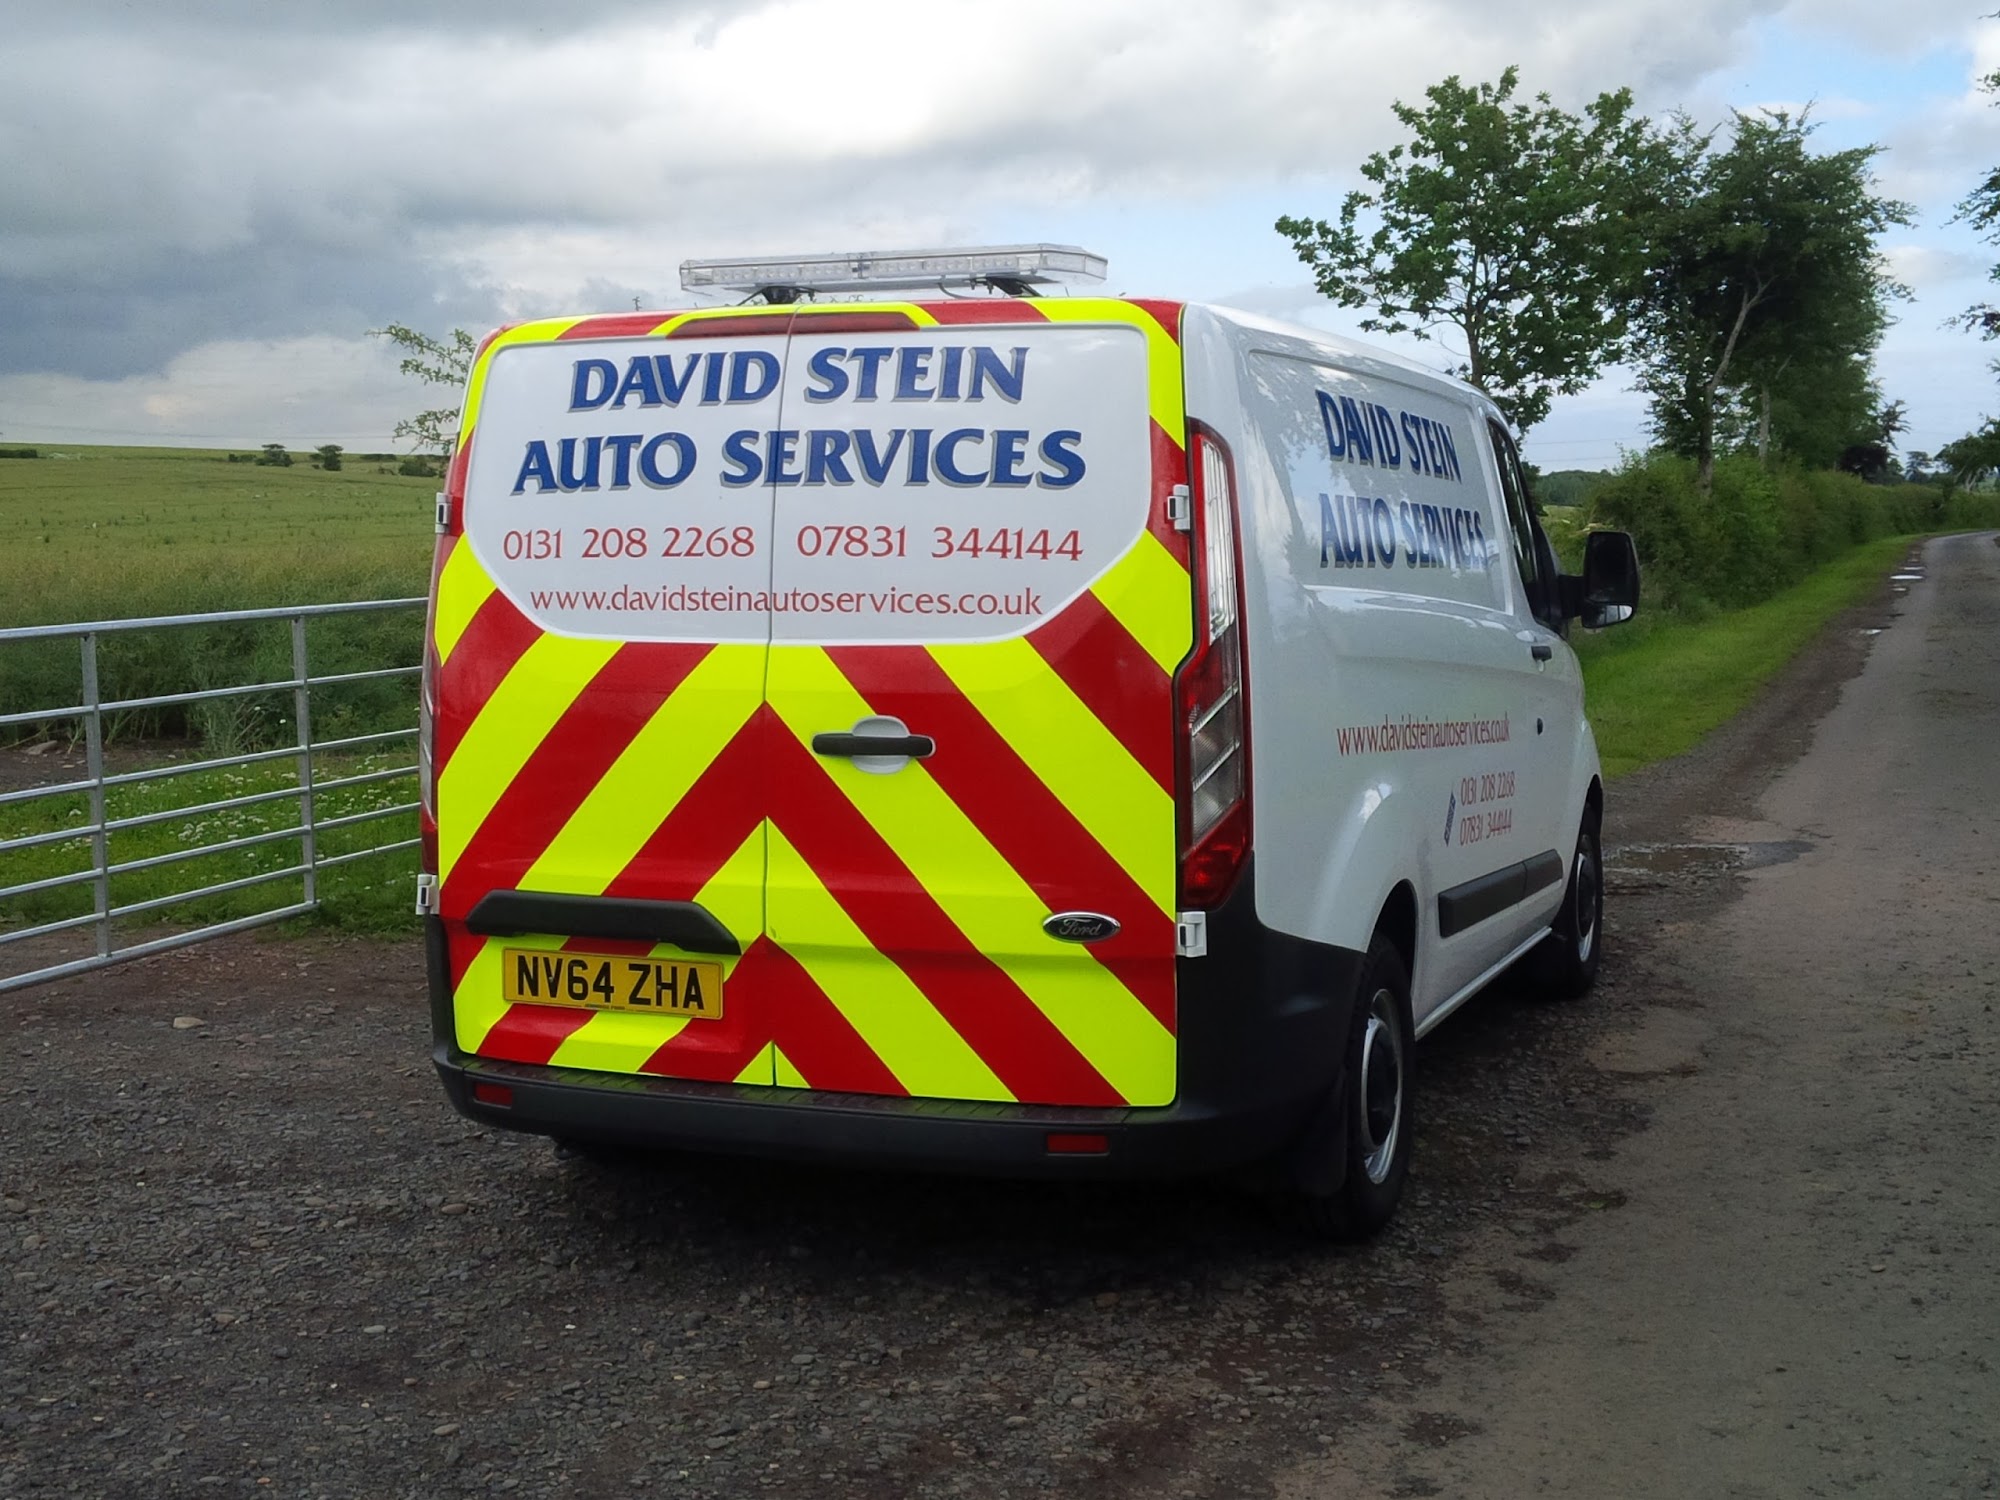 David Stein Auto Services